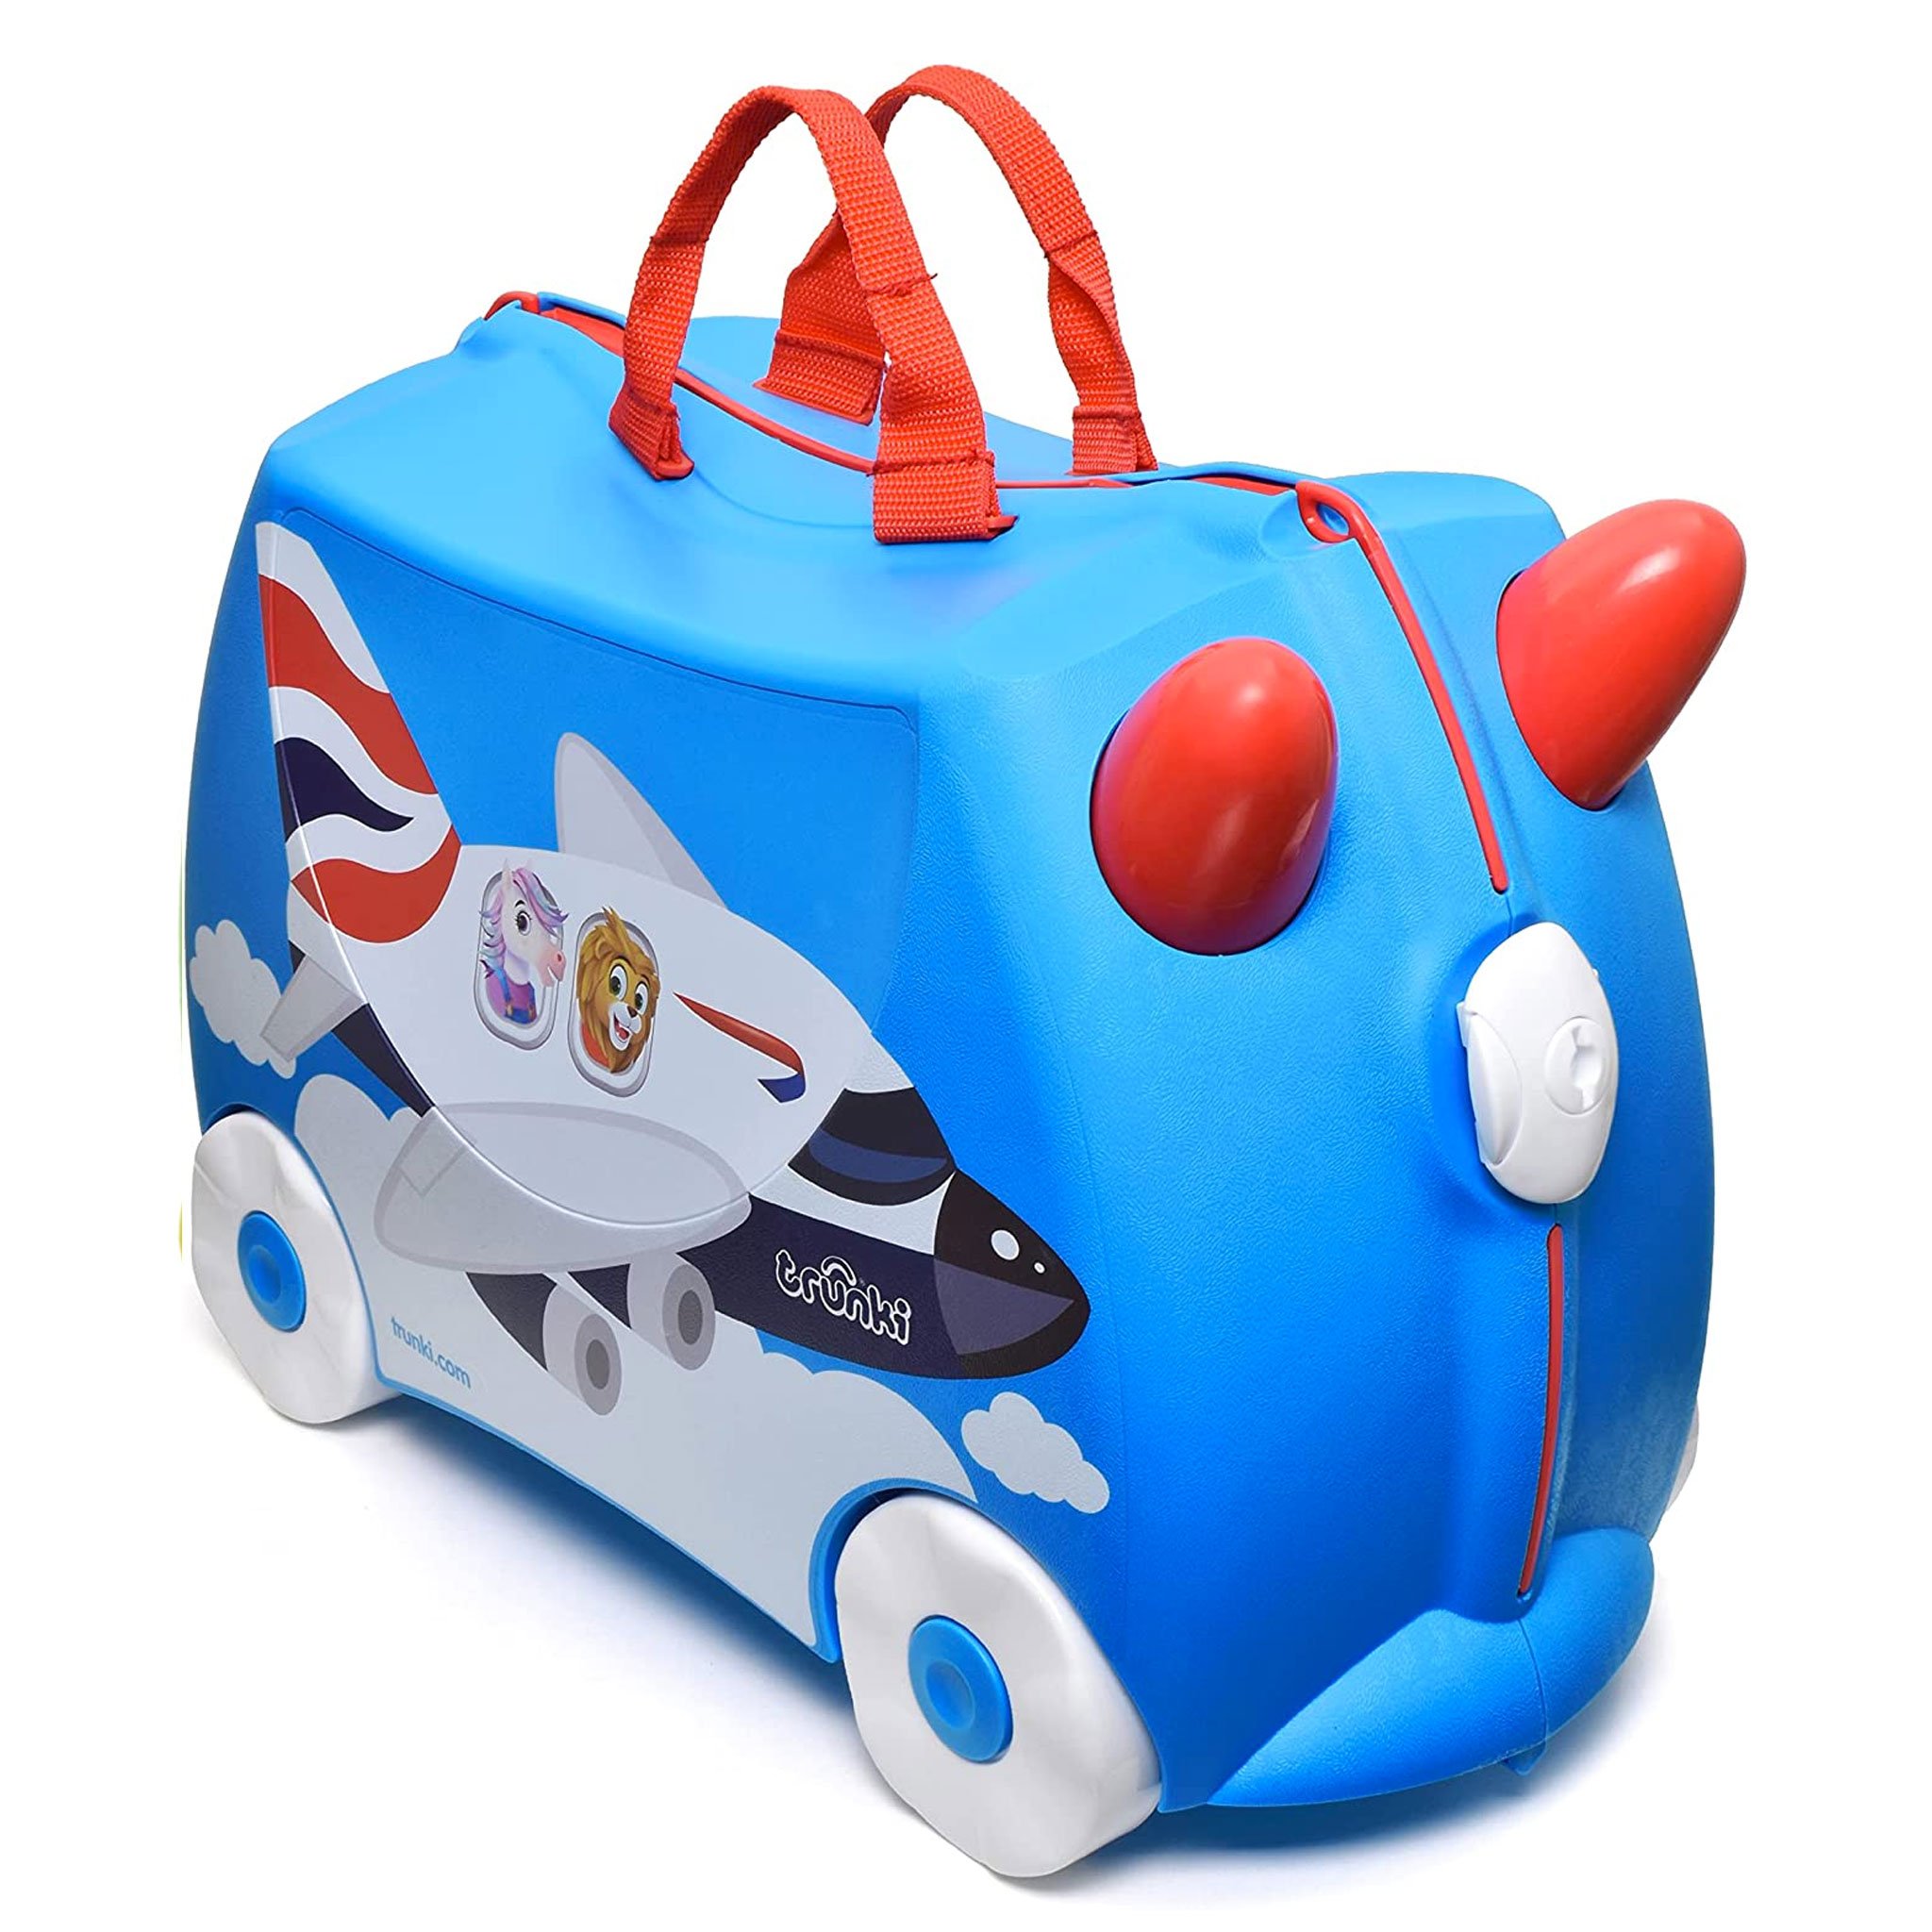 TR0351-GB-trunki-valigetta-cavalcabile-traino-bambini-viaggiare-colorata-amelie-trolley-regalo-bagaglio-a-mano-valigia.jpg